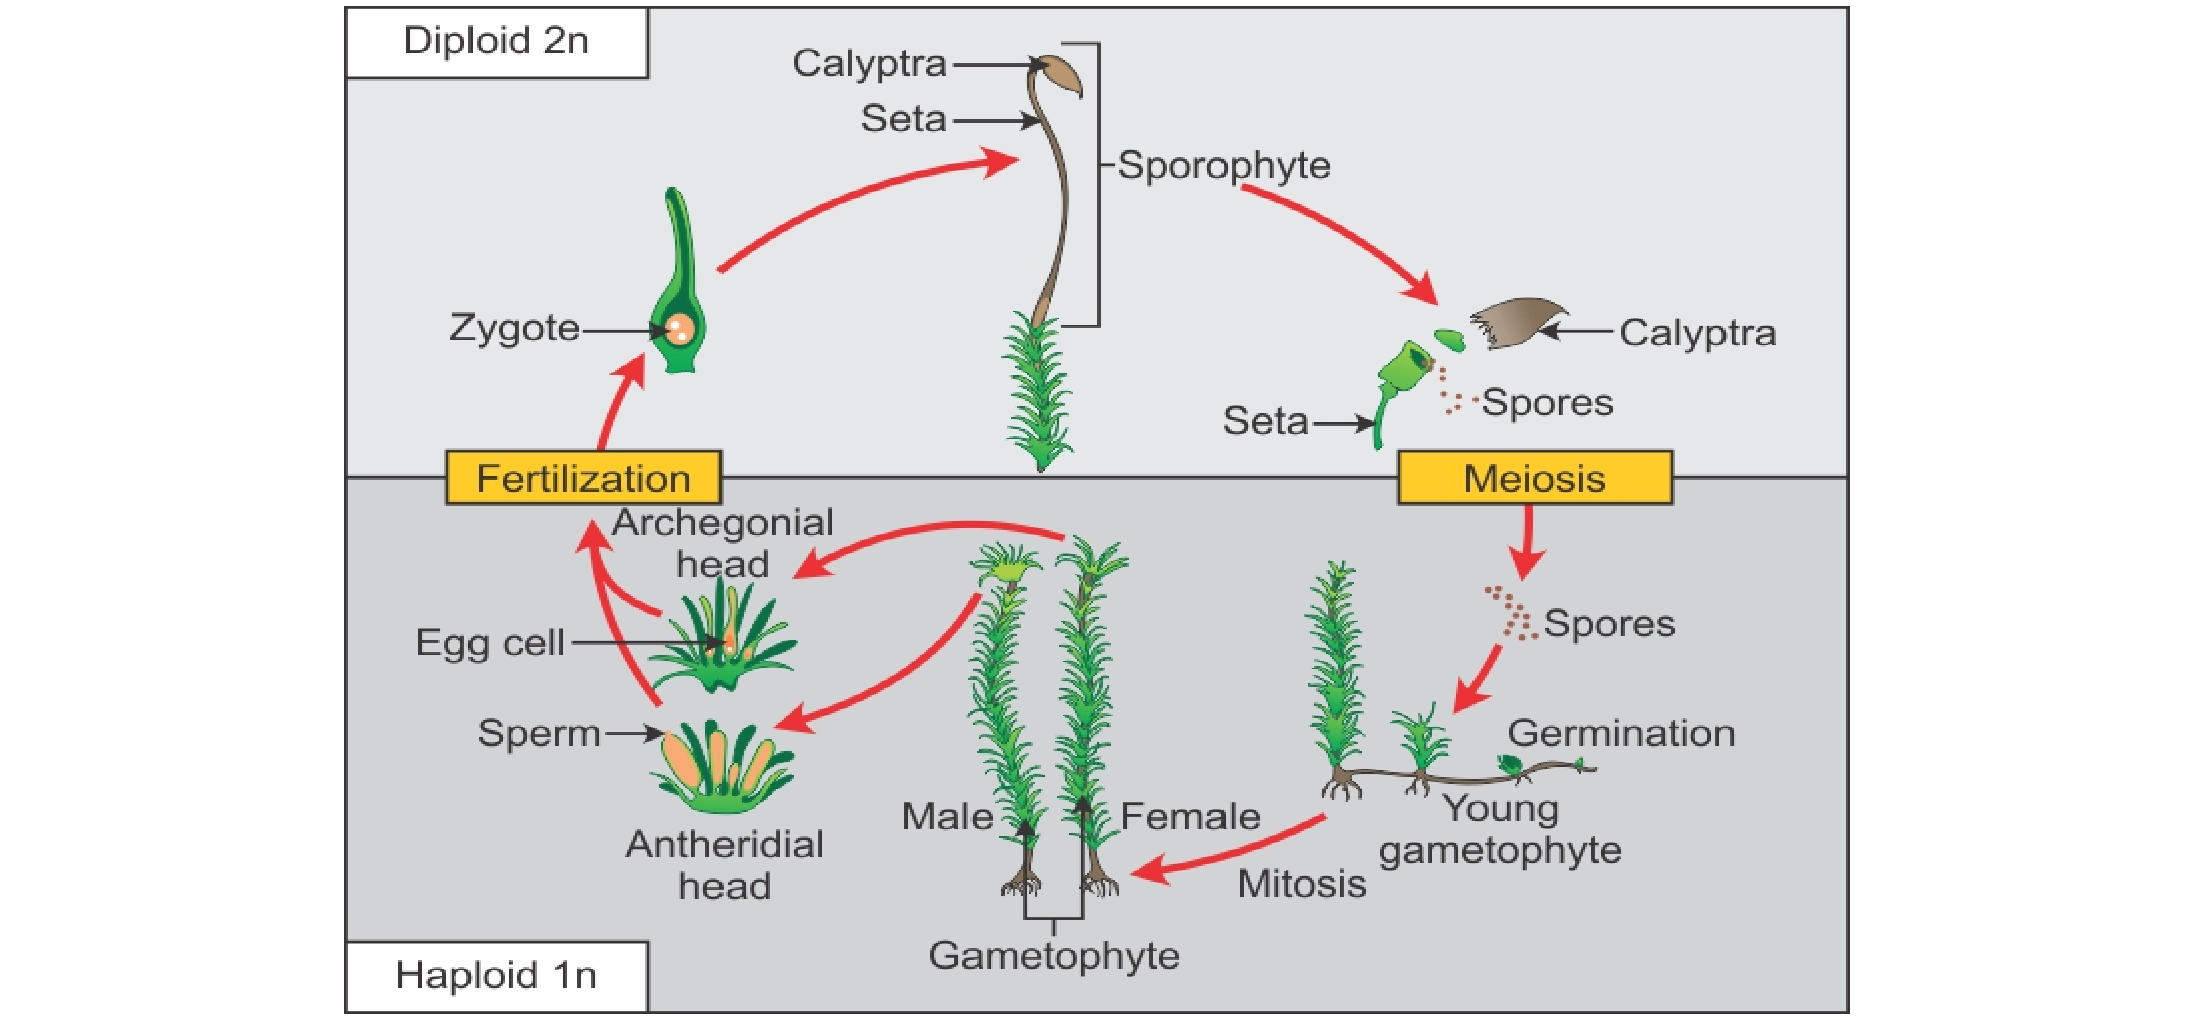 Fase-fase dalam daur hidup bryophyta yang benar adalah